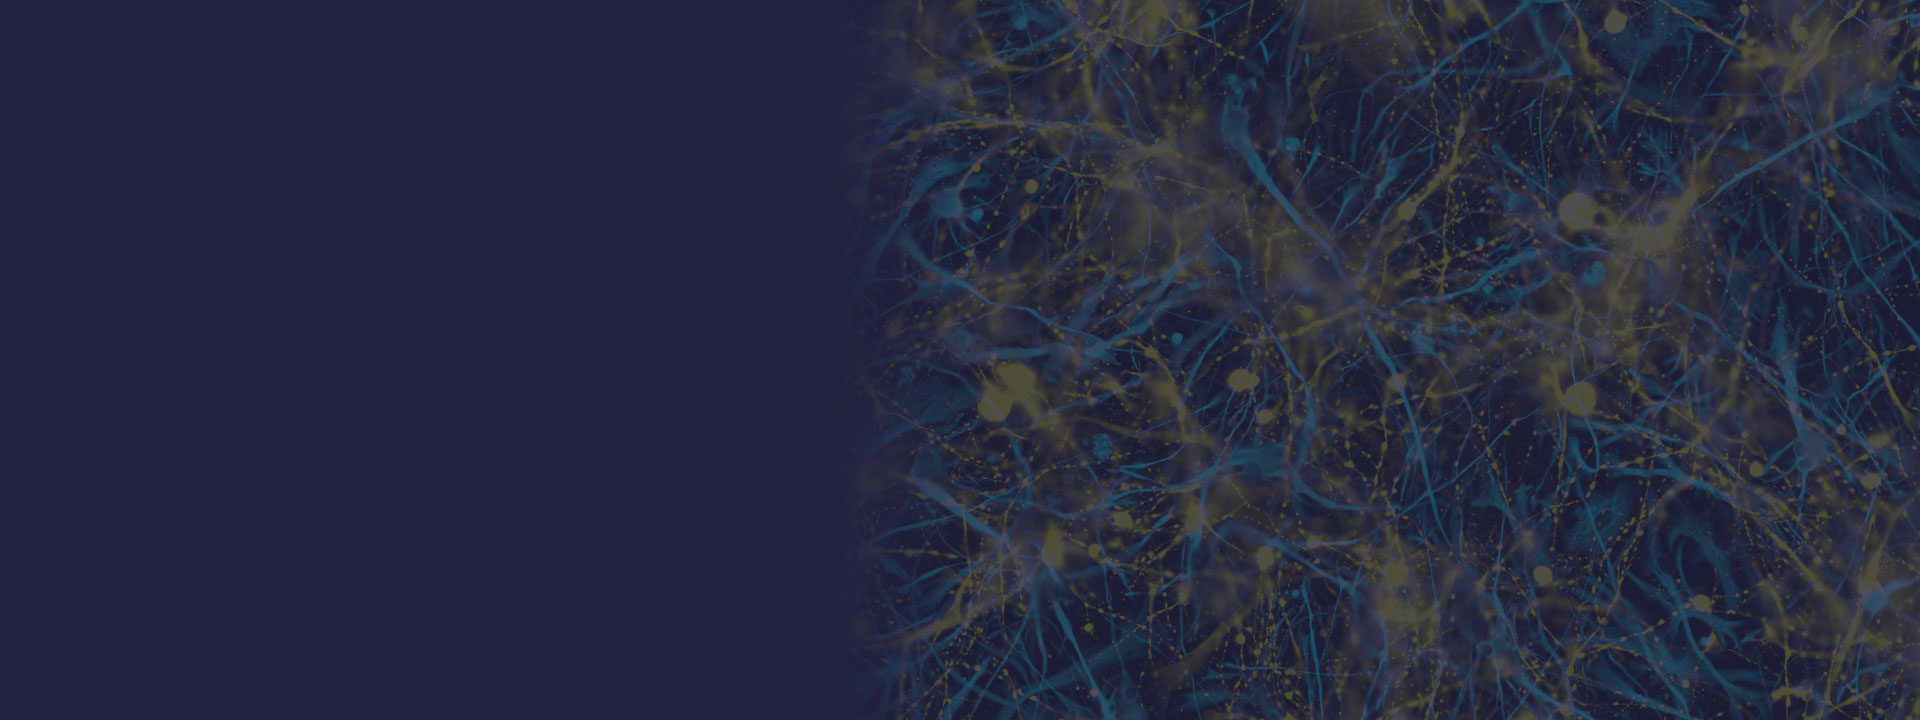 CVPR 2021 header: organic network on dark background